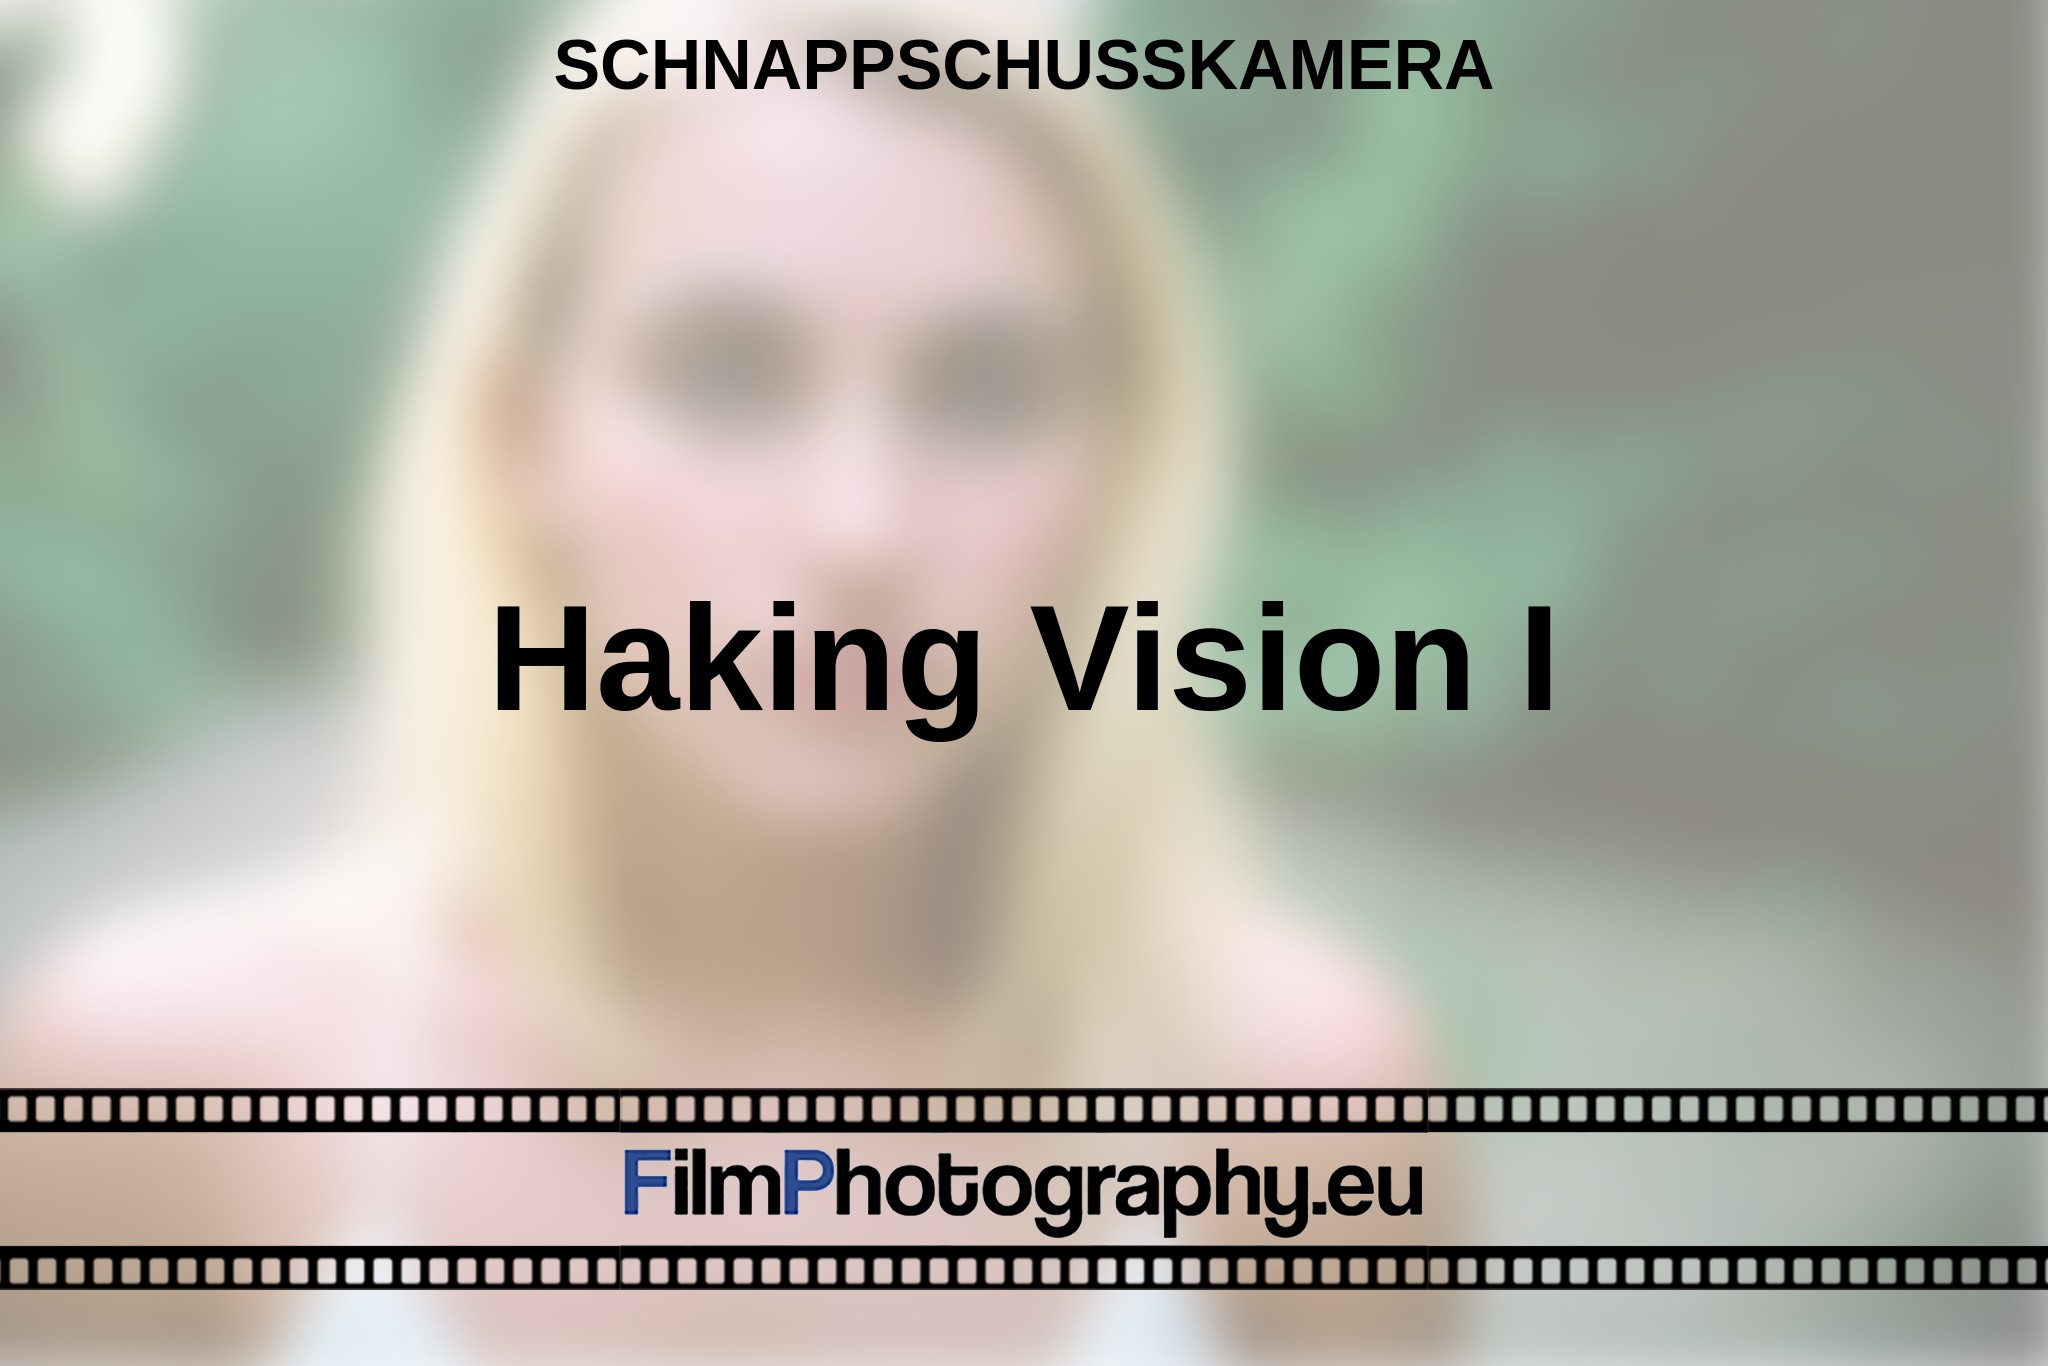 haking-vision-i-schnappschusskamera-bnv.jpg